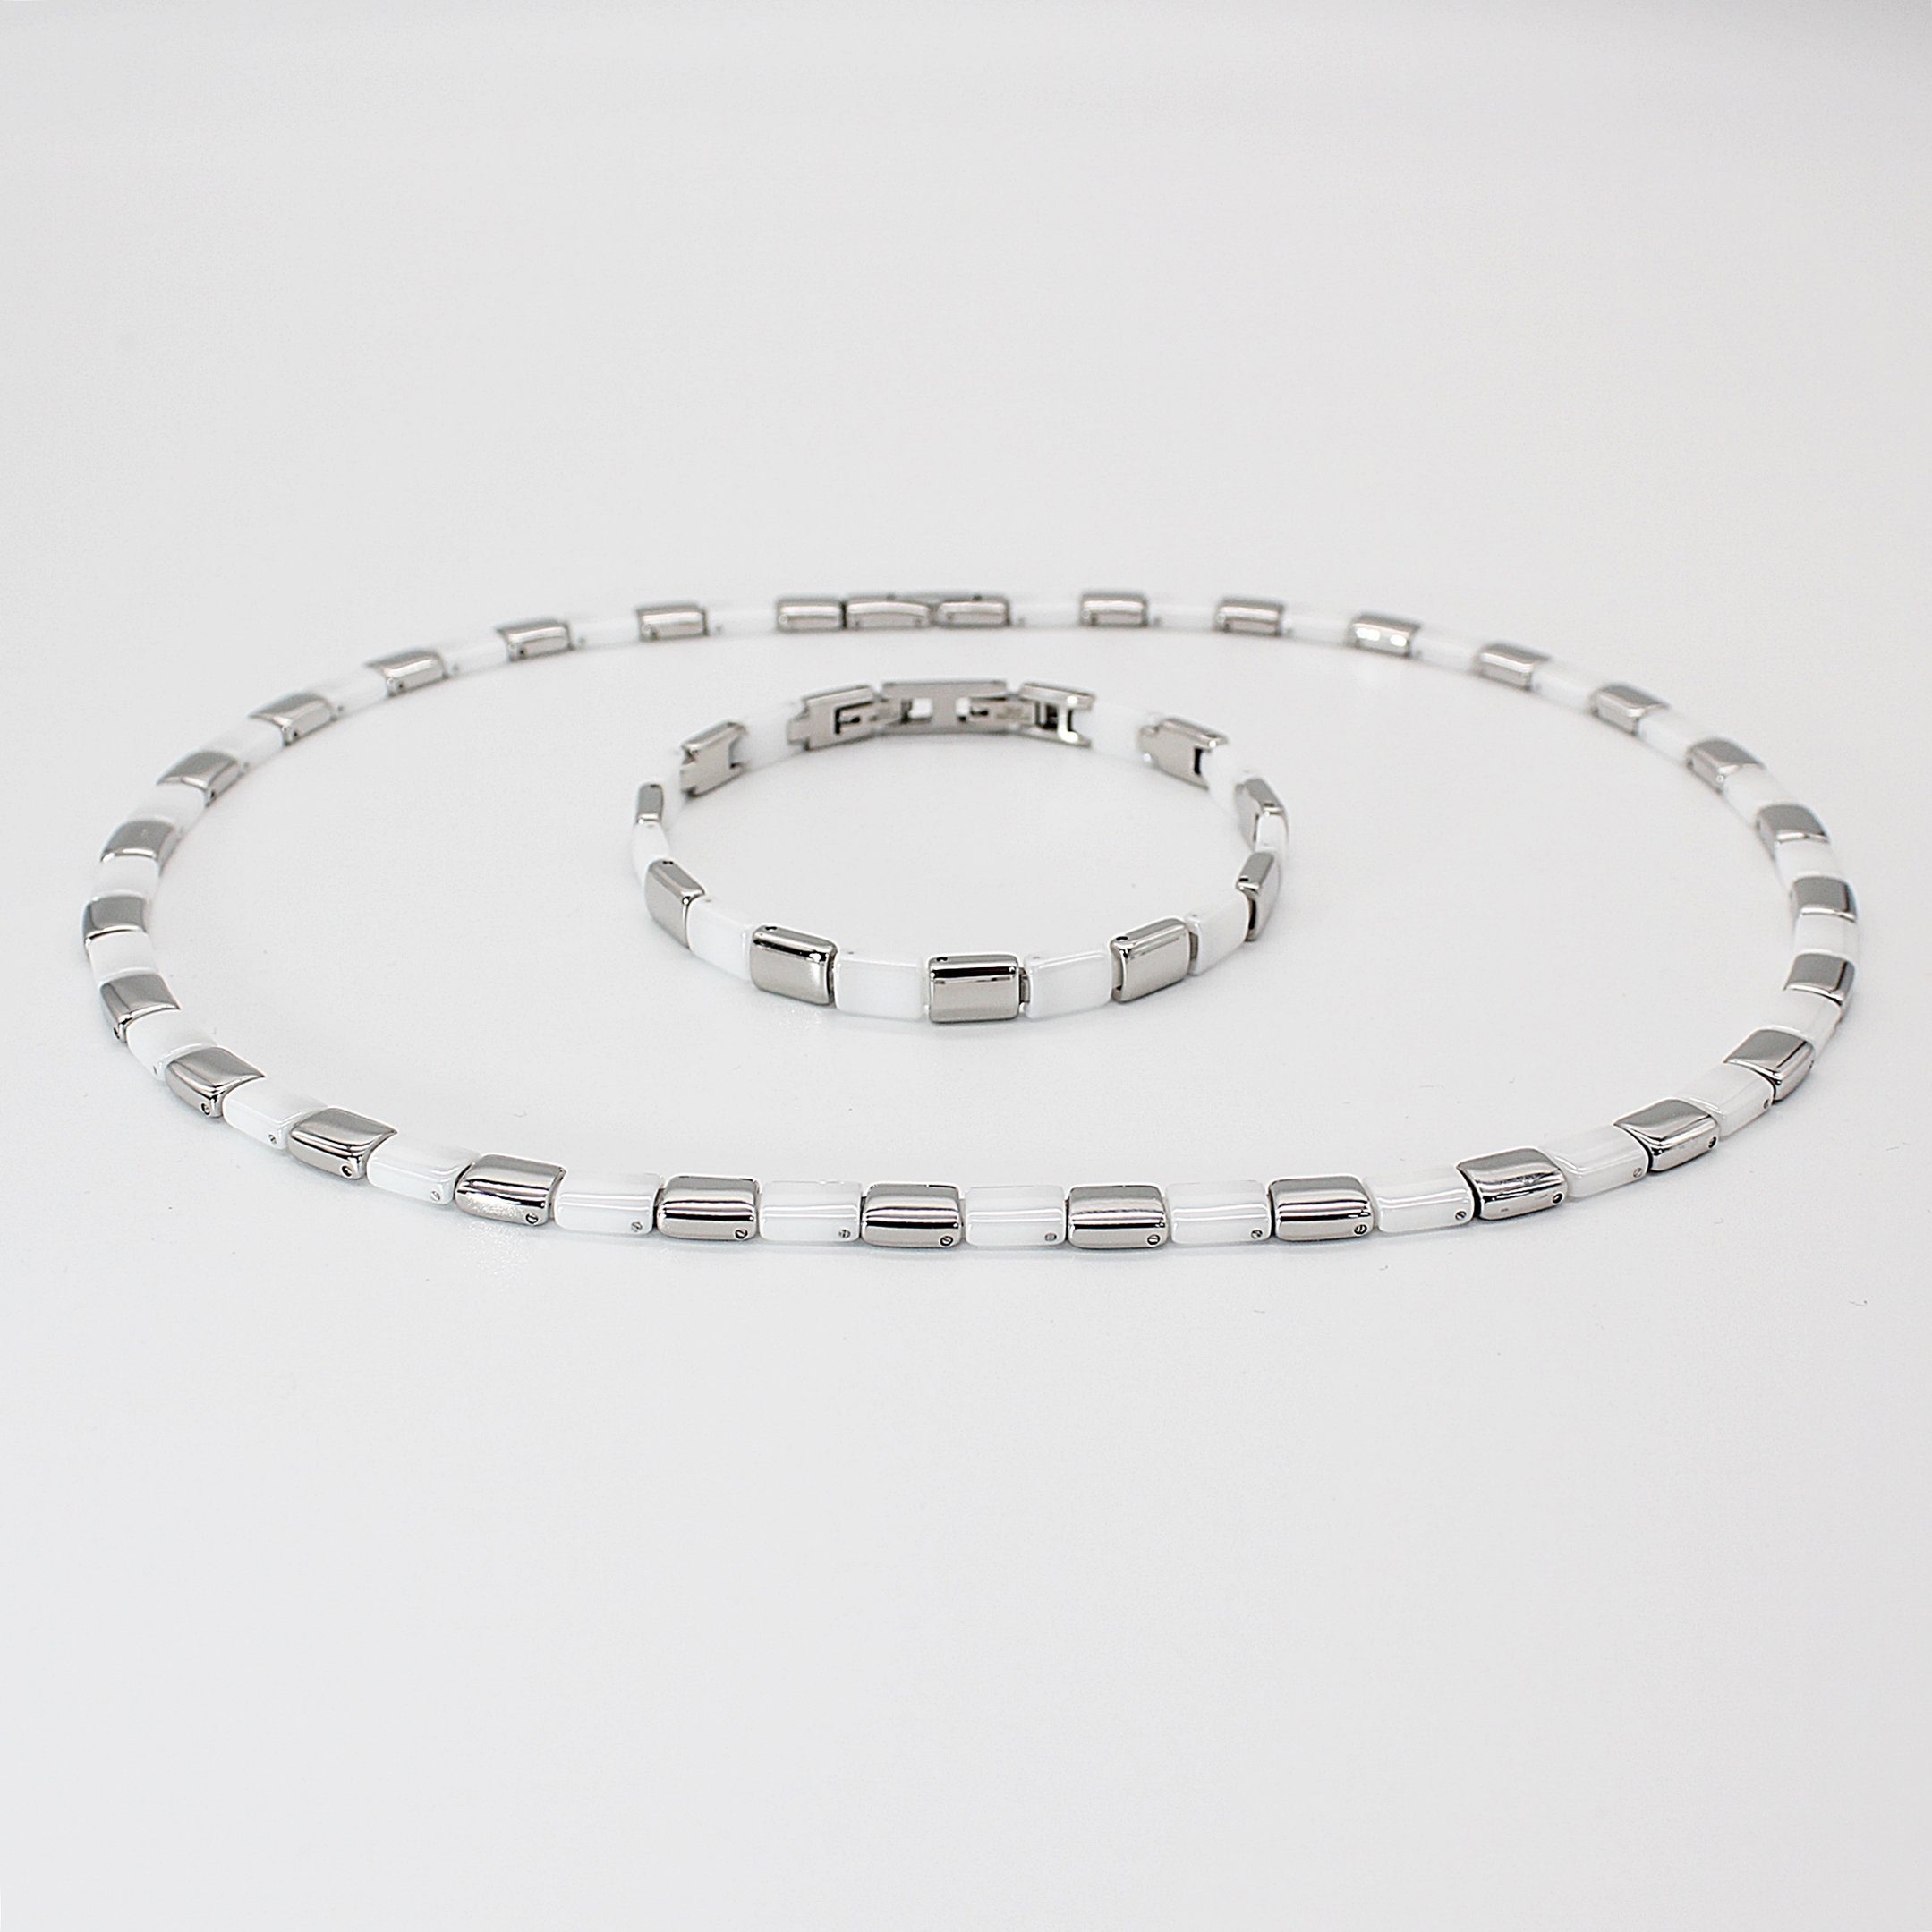 ELLAWIL Collier-Set Halskette Armband Keramik cm, mm), 48,5 weißer inklusive Armbandlänge 6 cm, silberfarbenem mit aus Breite (Kettenlänge Geschenkschachtel Edelstahl 19